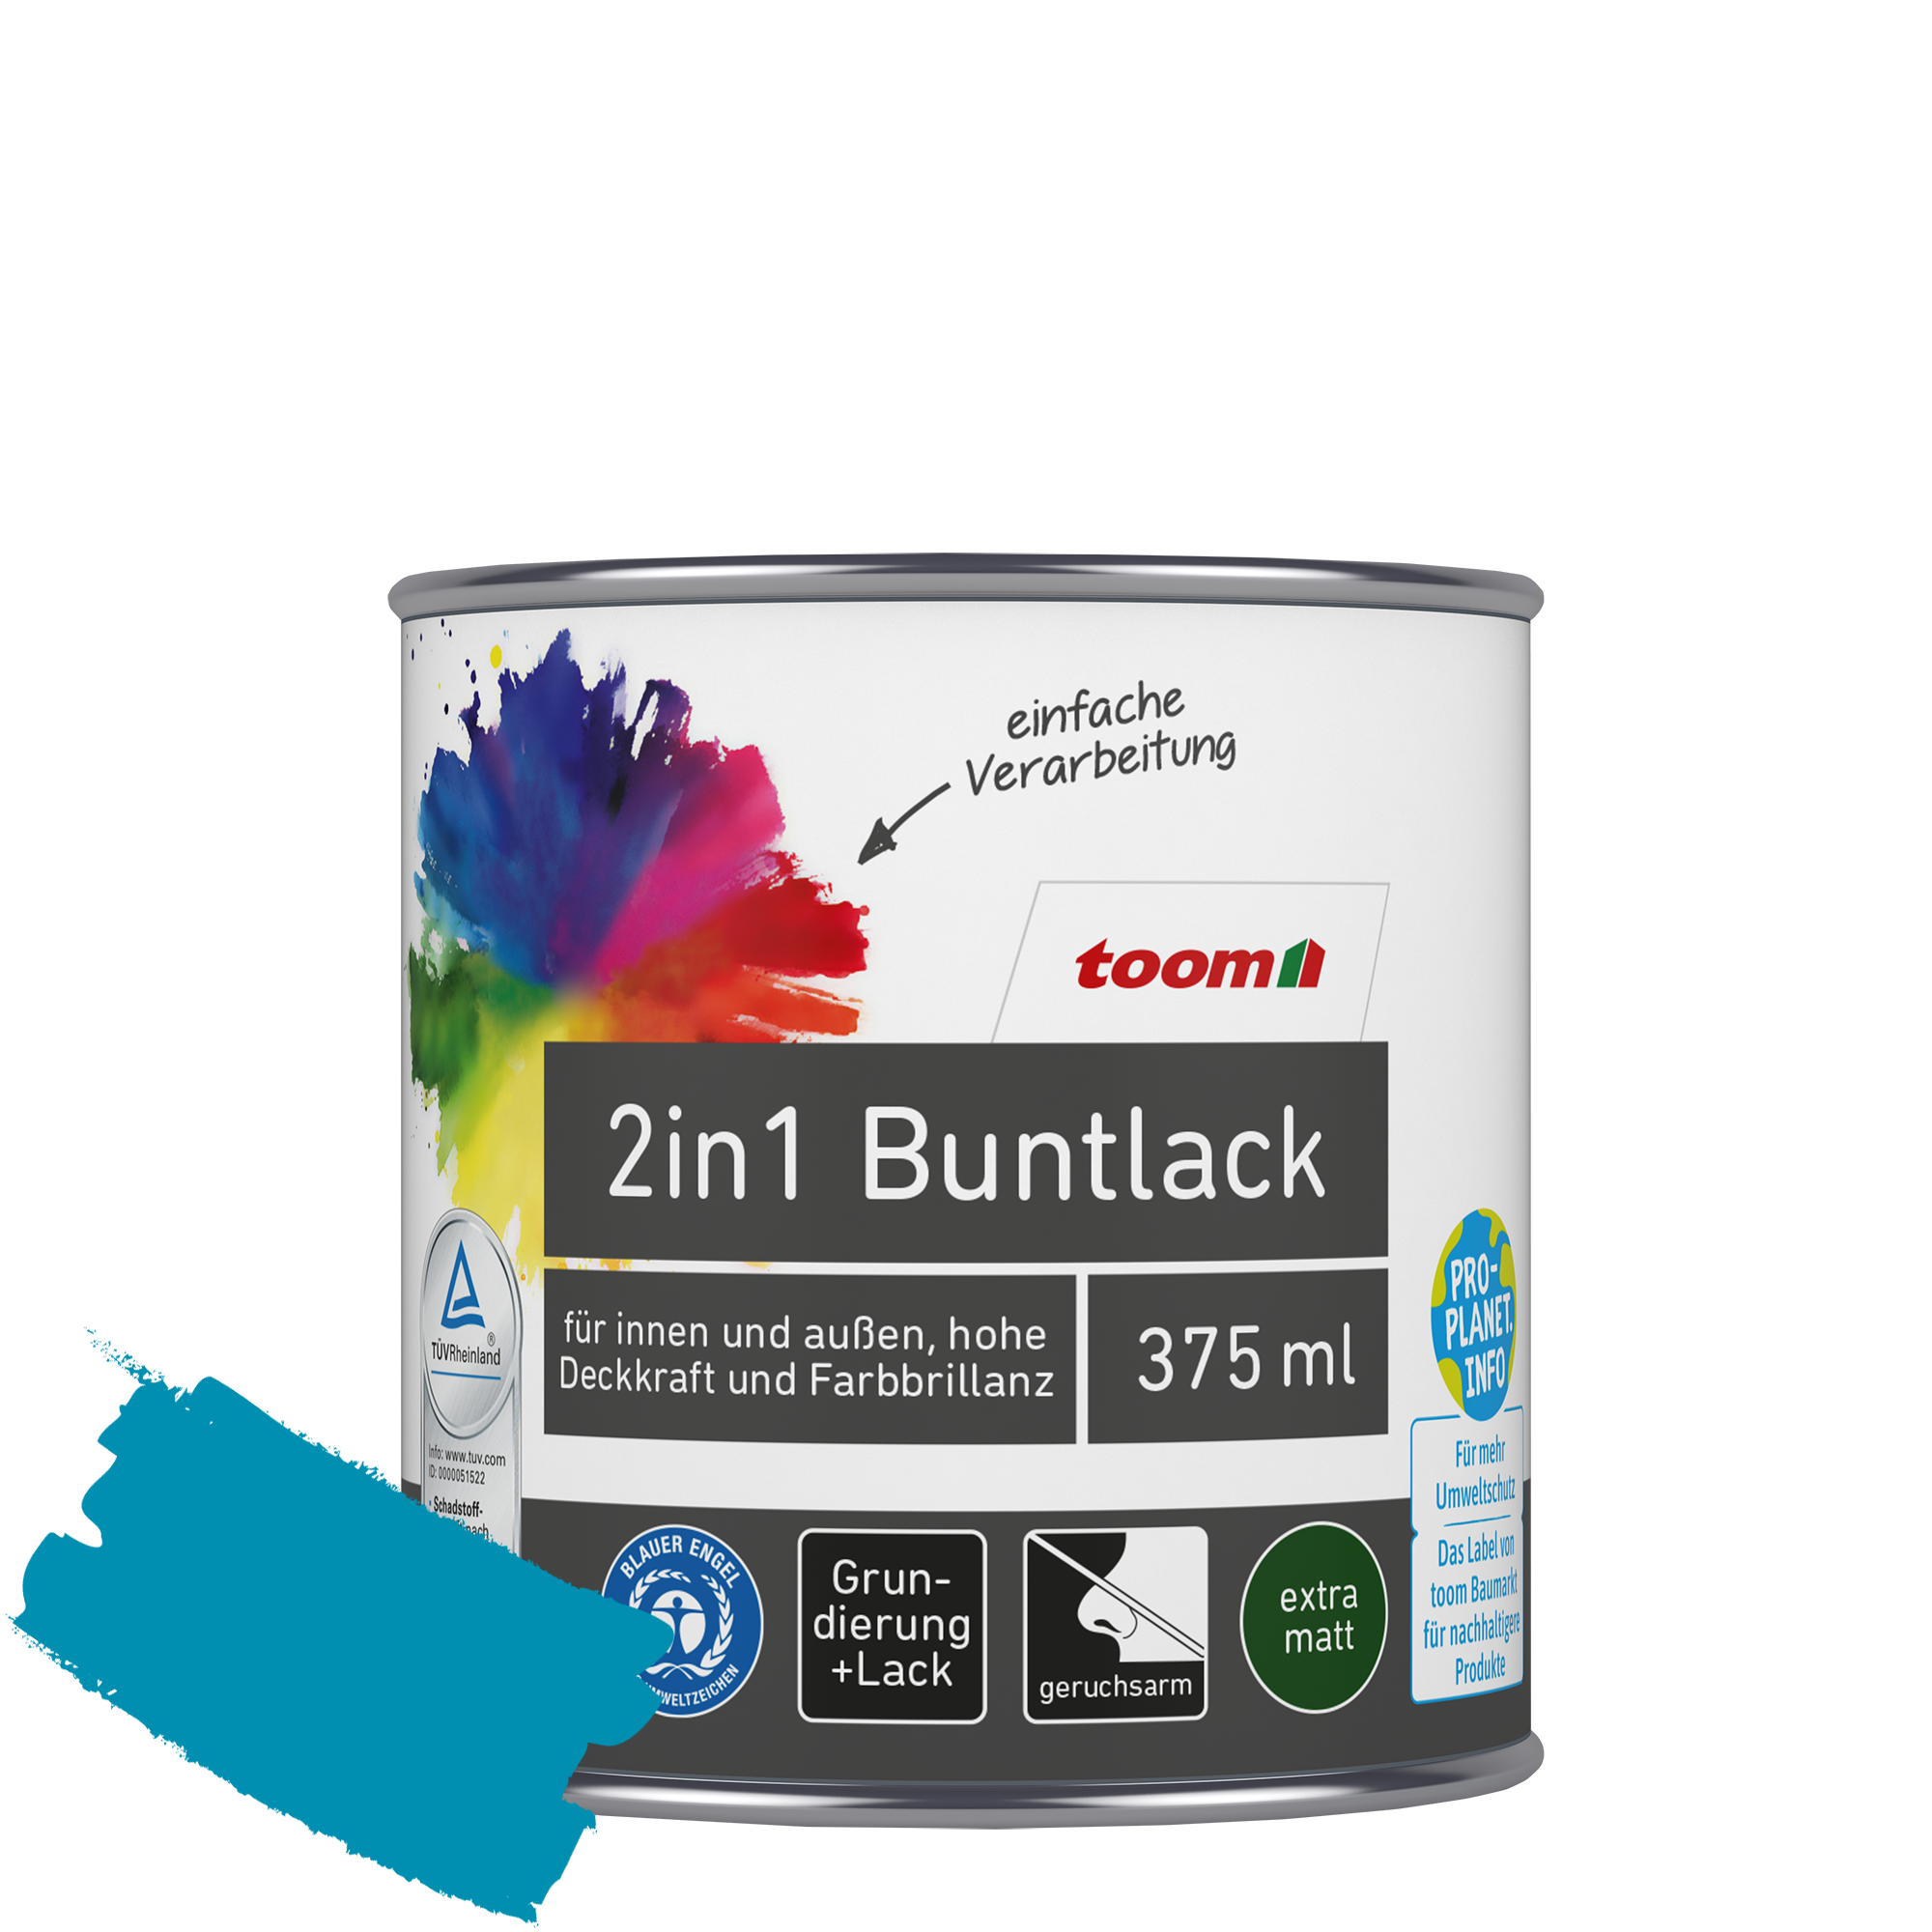 2in1 Buntlack 'Aquamarine' lichtblau matt 375 ml + product picture